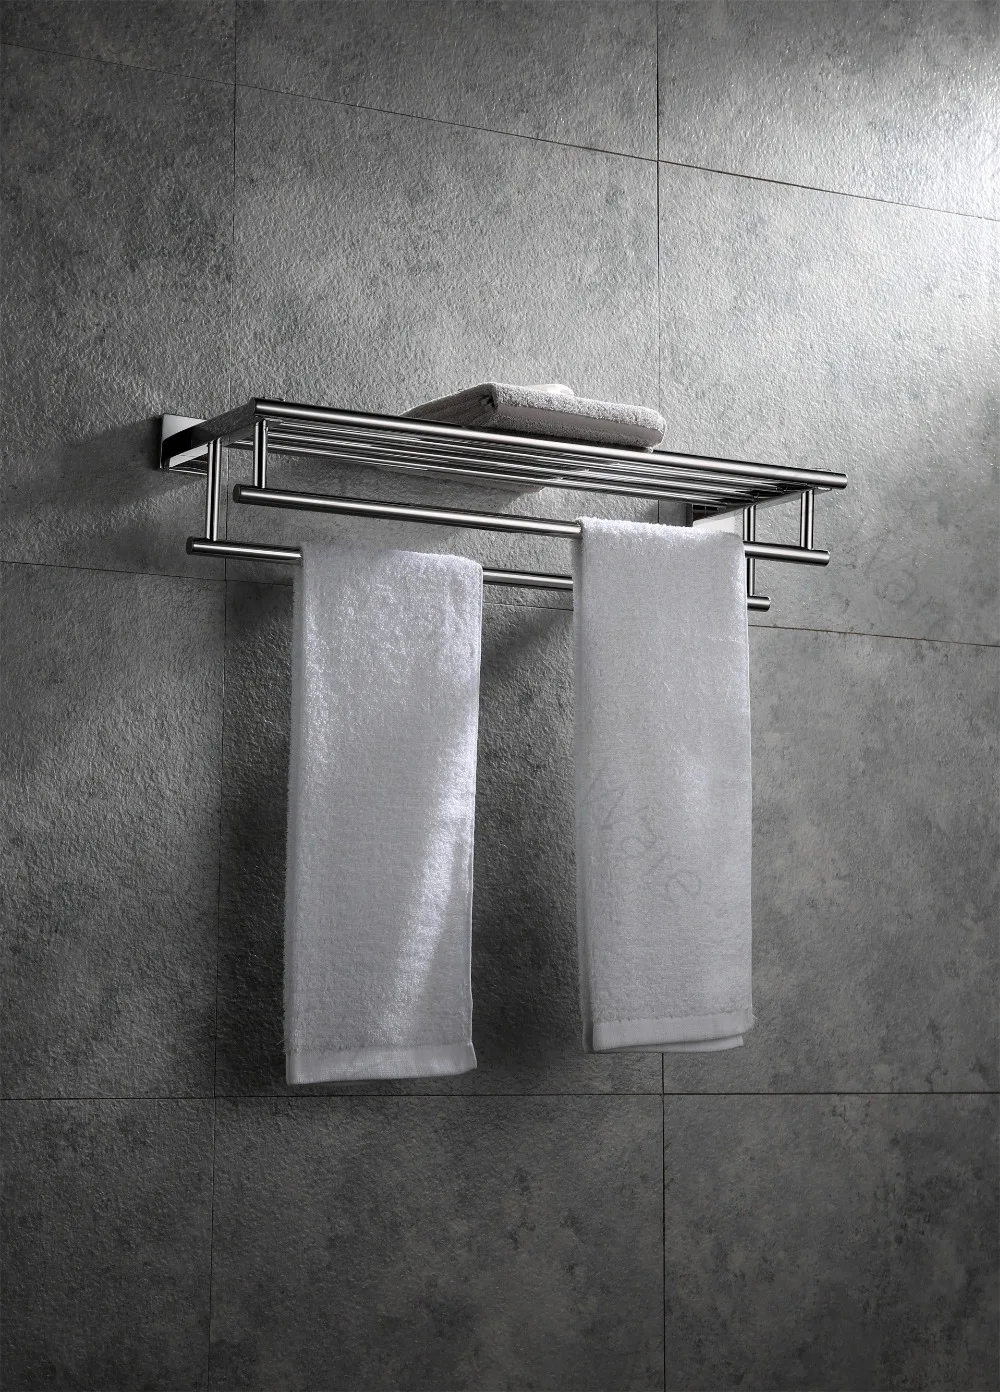 Стиль квадратный хромовый цветное полотенце стойка для полотенец 304 из нержавеющей стали двойной стеллаж монтируемый на стену аксессуары для ванной комнаты 9170 K